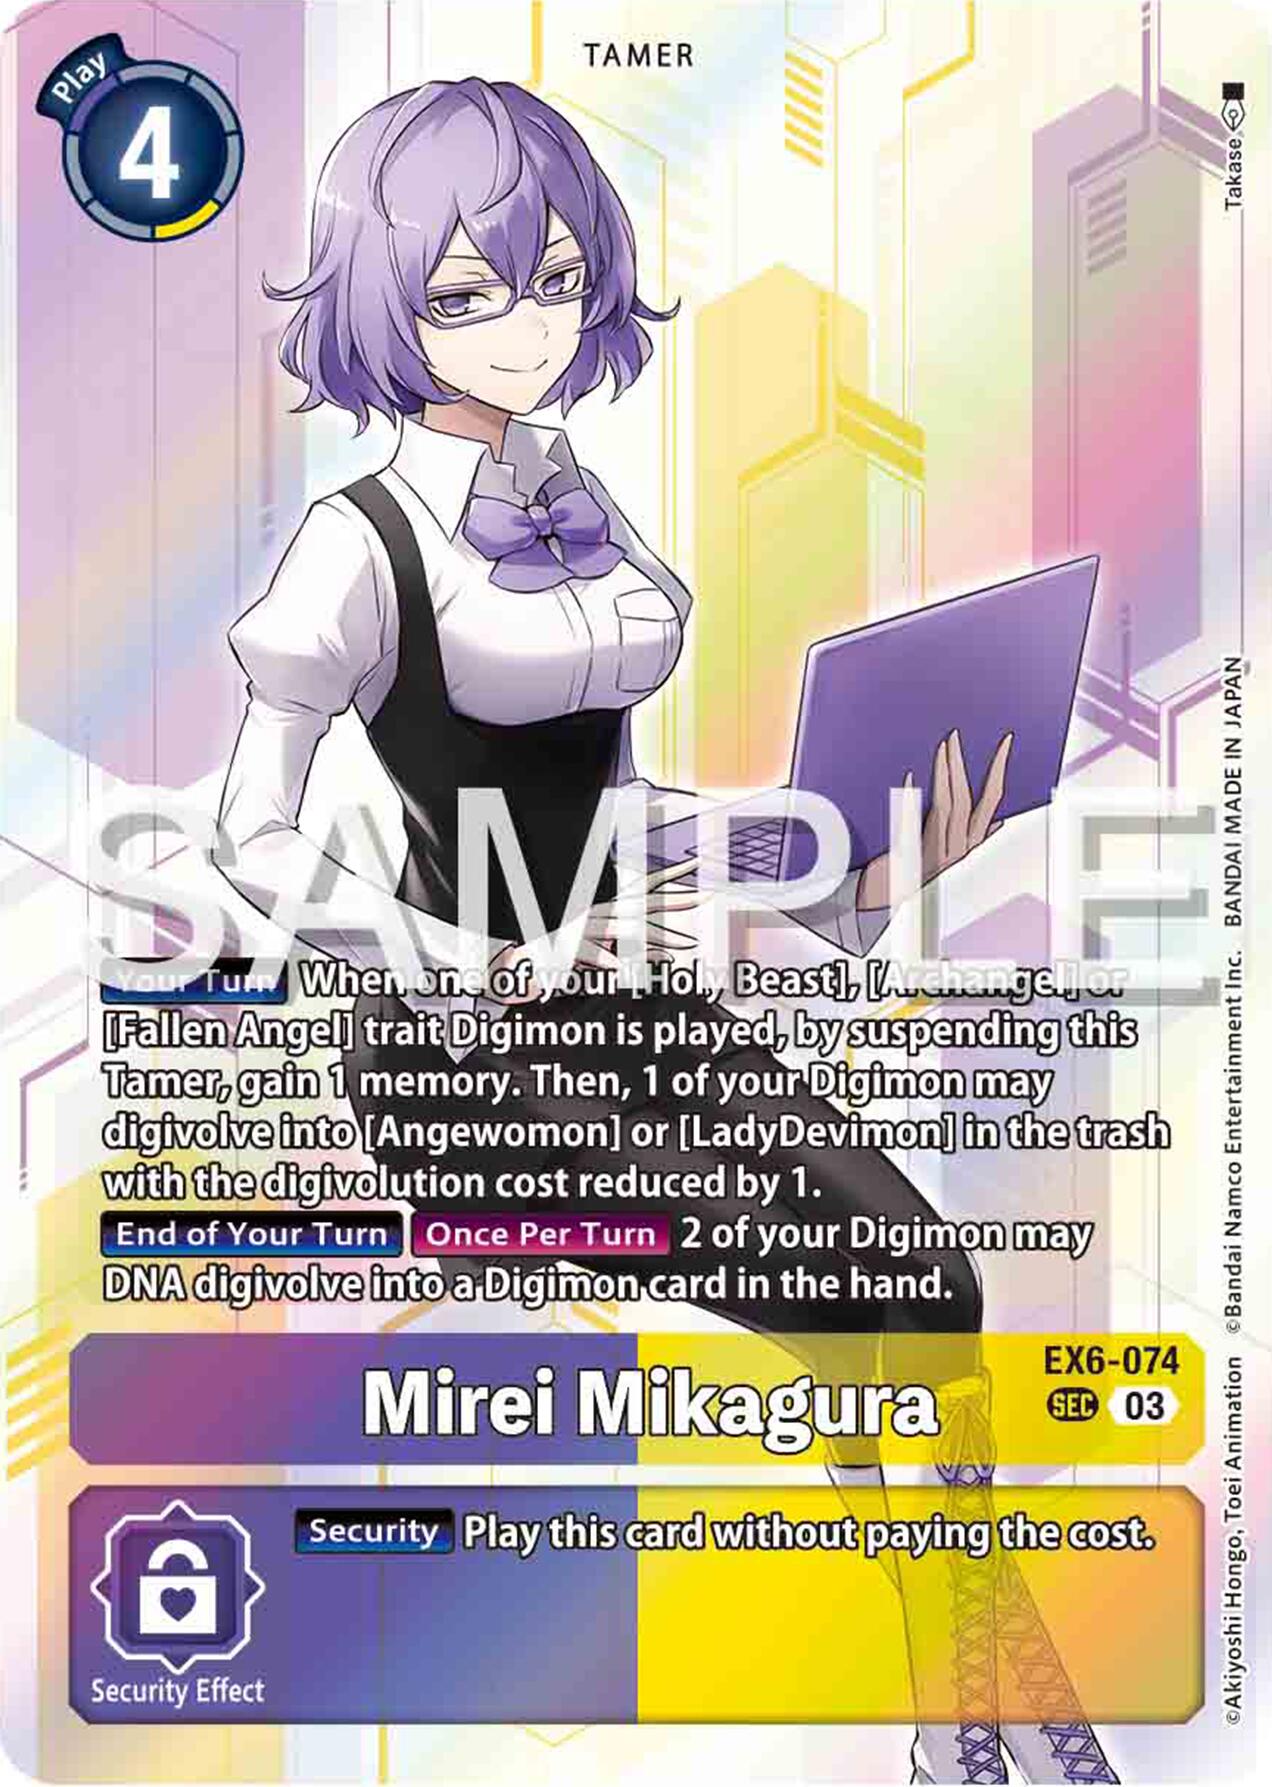 Mirei Mikagura [EX6-074] [Infernal Ascension] | Amazing Games TCG